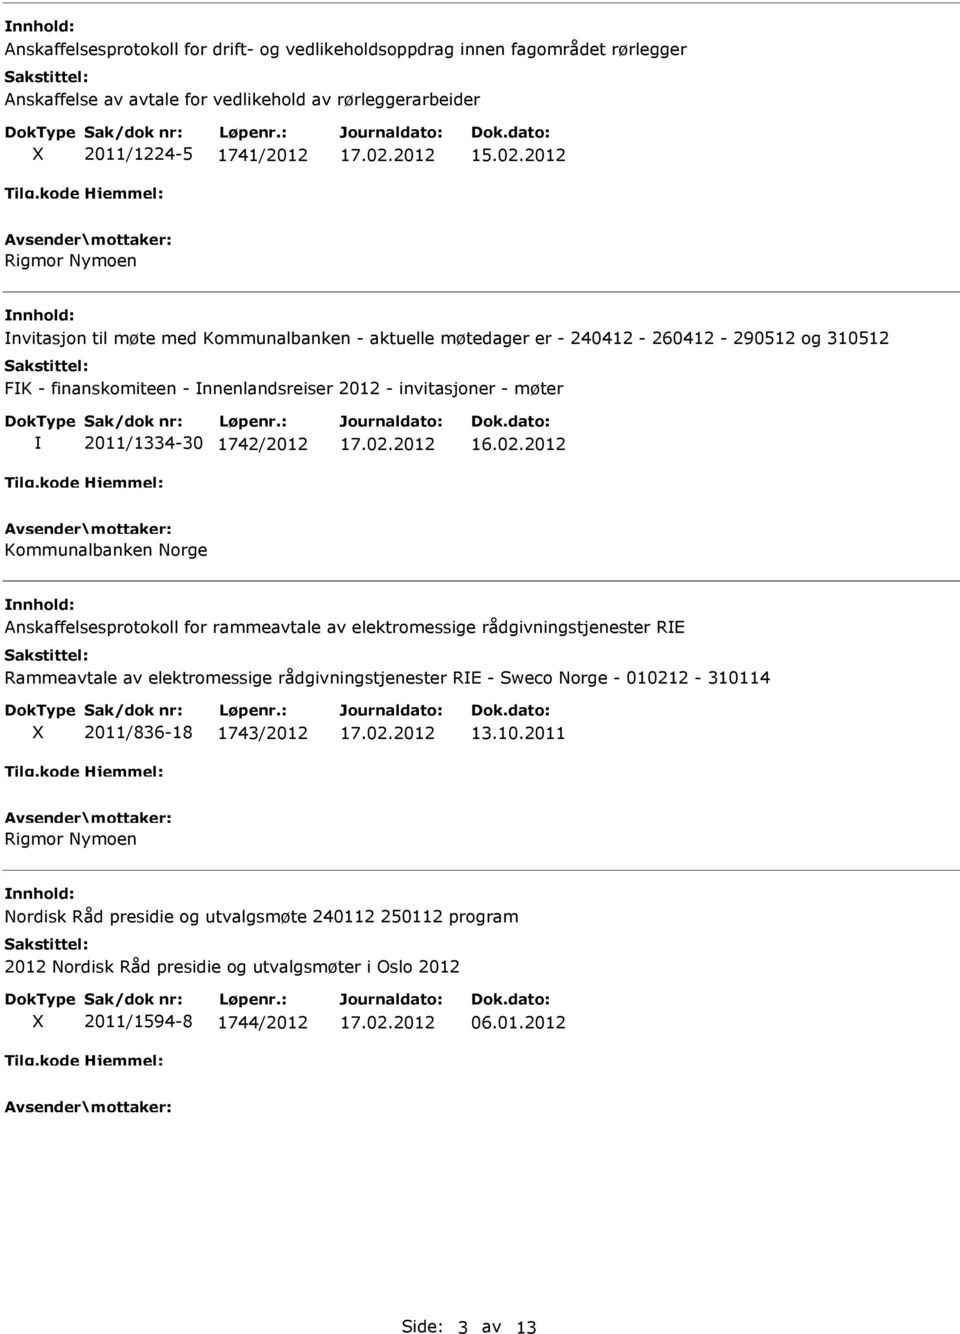 Kommunalbanken Norge Anskaffelsesprotokoll for rammeavtale av elektromessige rådgivningstjenester RE Rammeavtale av elektromessige rådgivningstjenester RE - Sweco Norge - 010212-310114